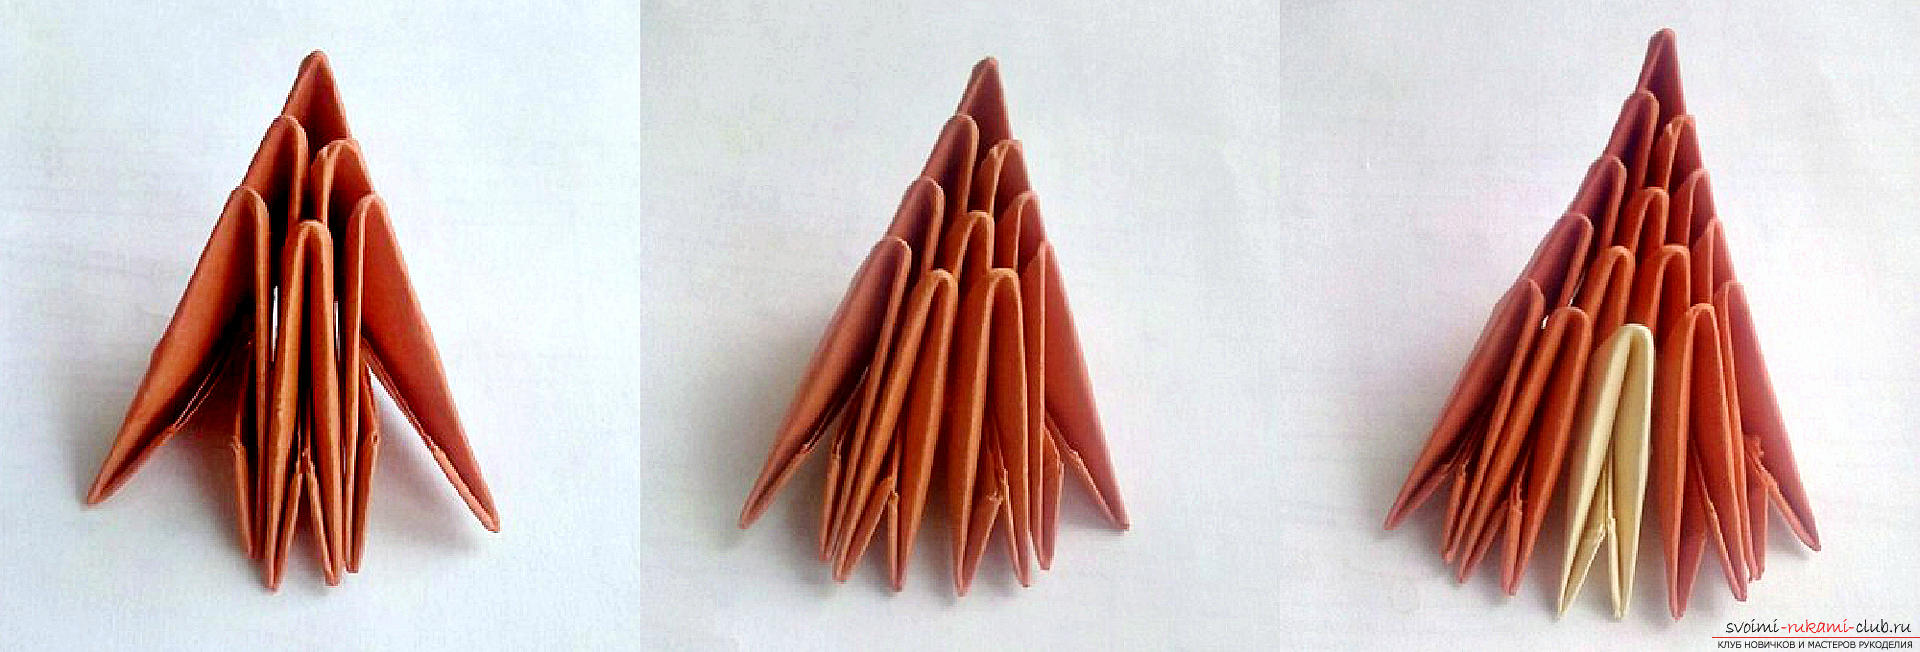 Этот мастер-класс модульного оригами научит статуэтку 